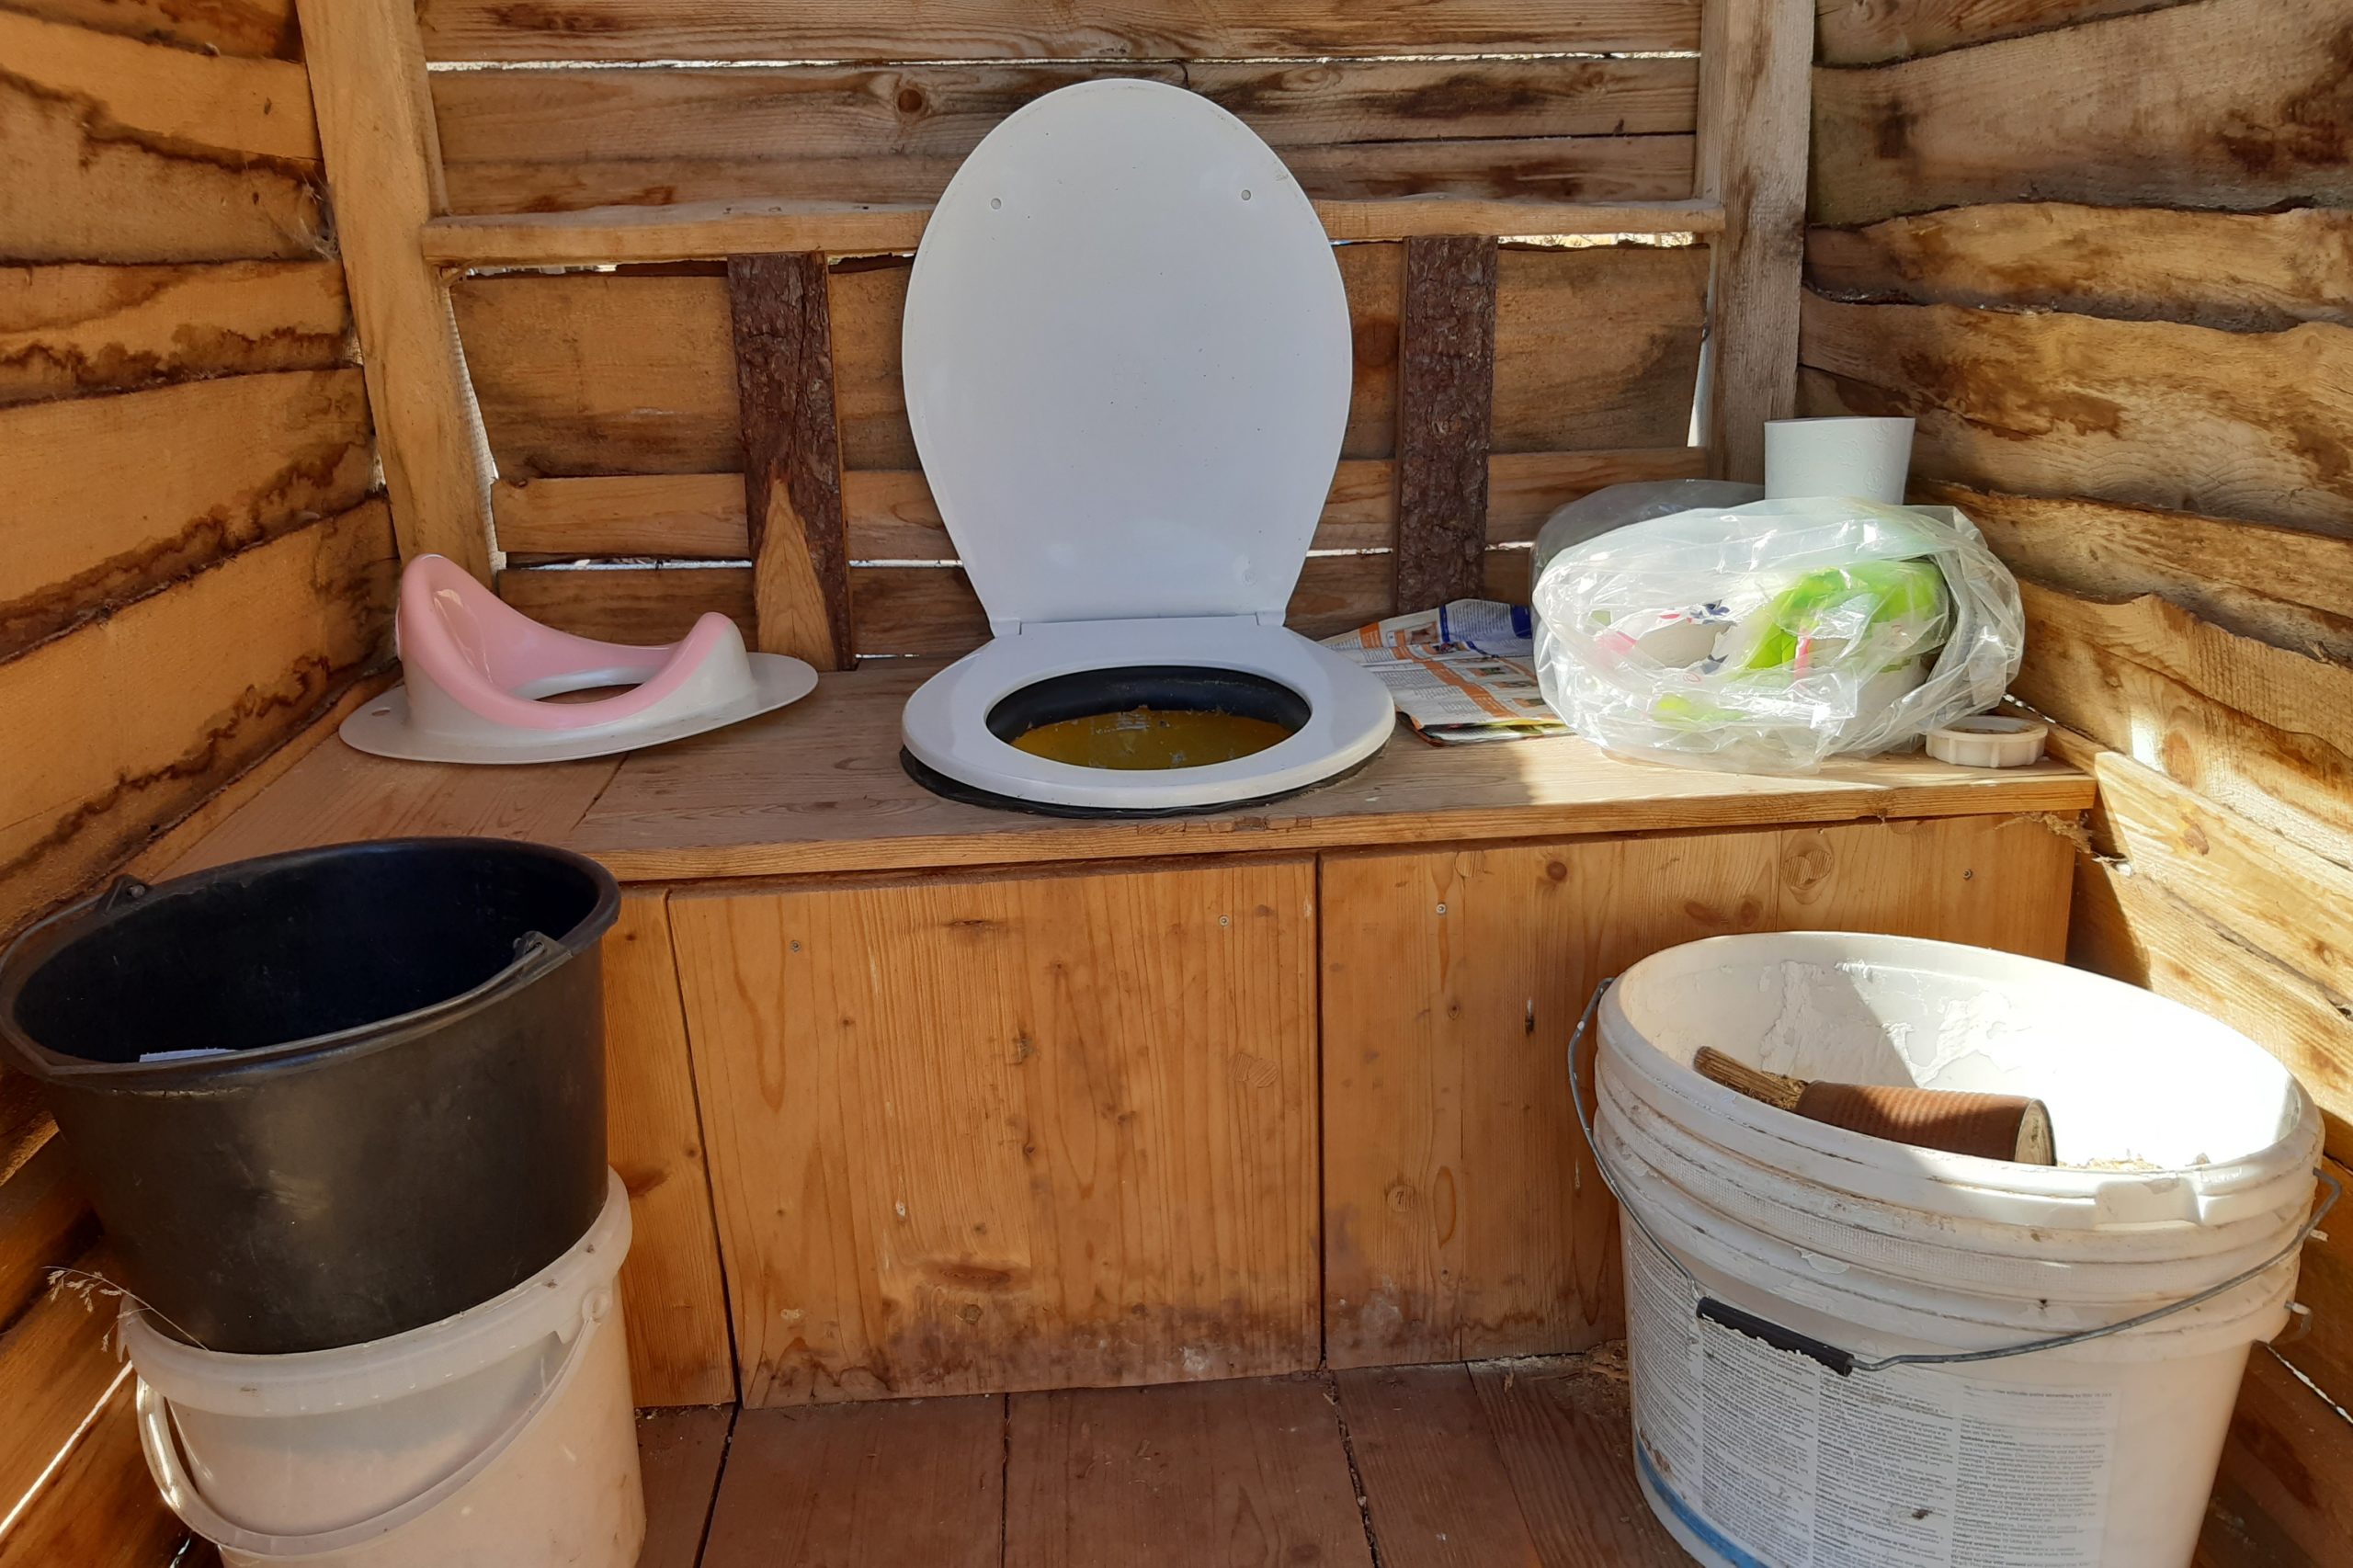 Trenntoilette selber bauen – Trelino® Composting Toilets